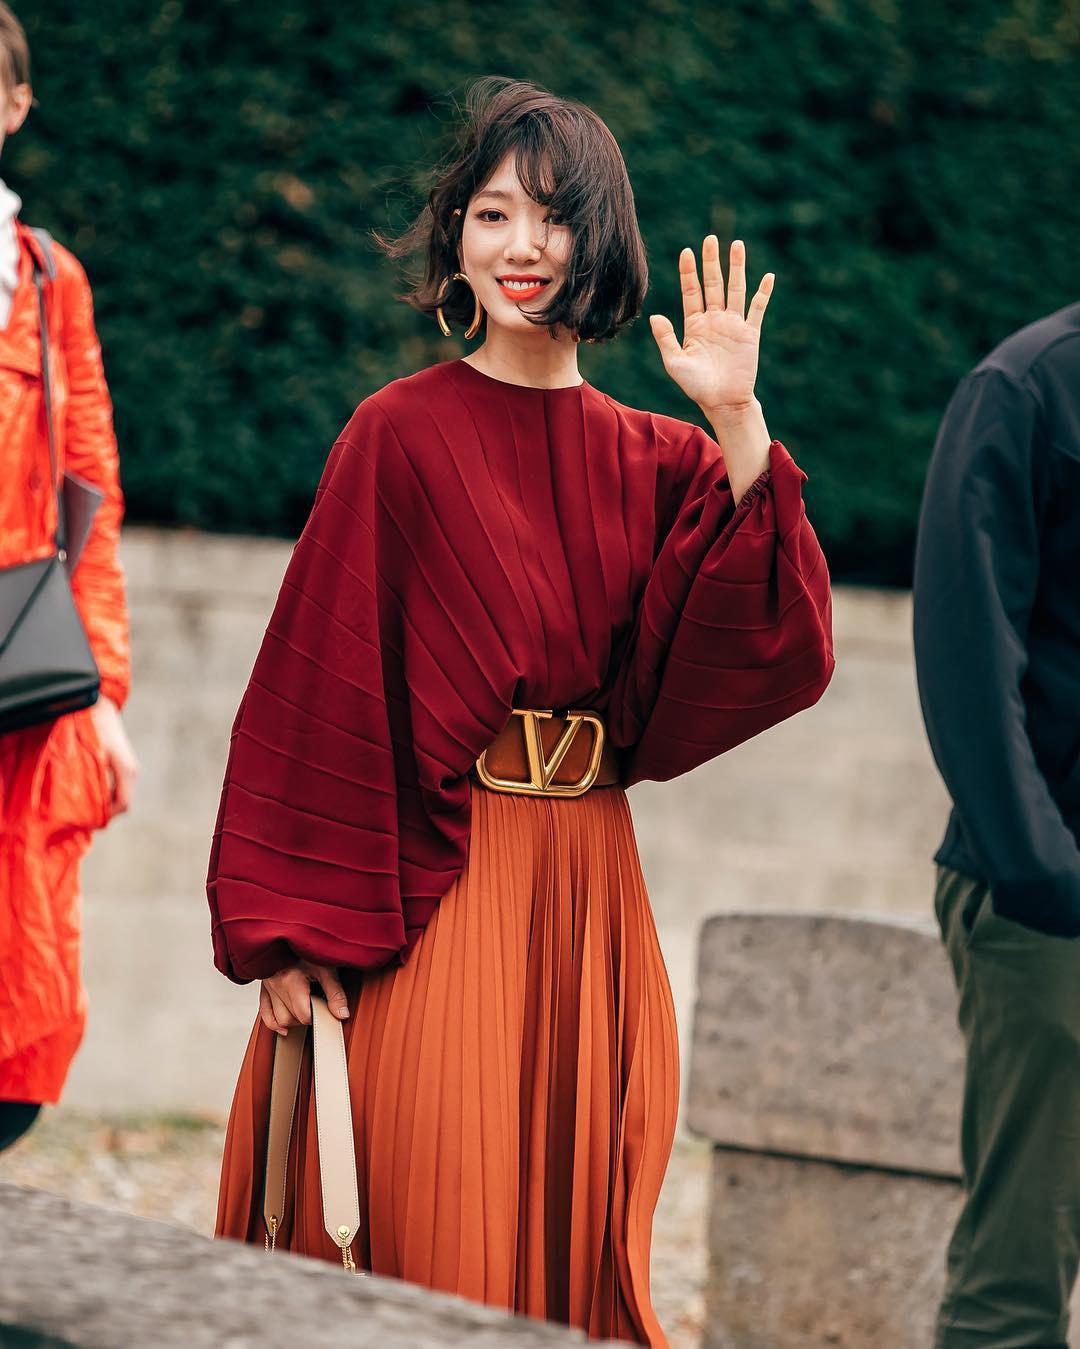 phong cách thời trang tại tuần lễ thời trang Park shin hye 6